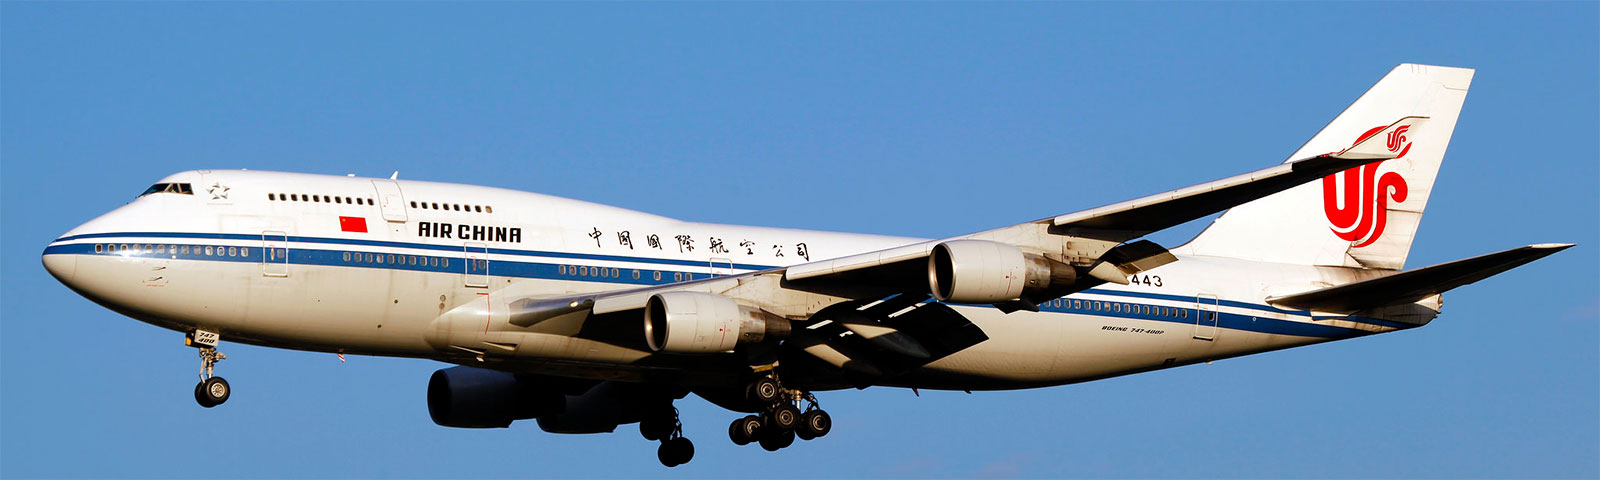 aeroplano in decollo della compagnia air china